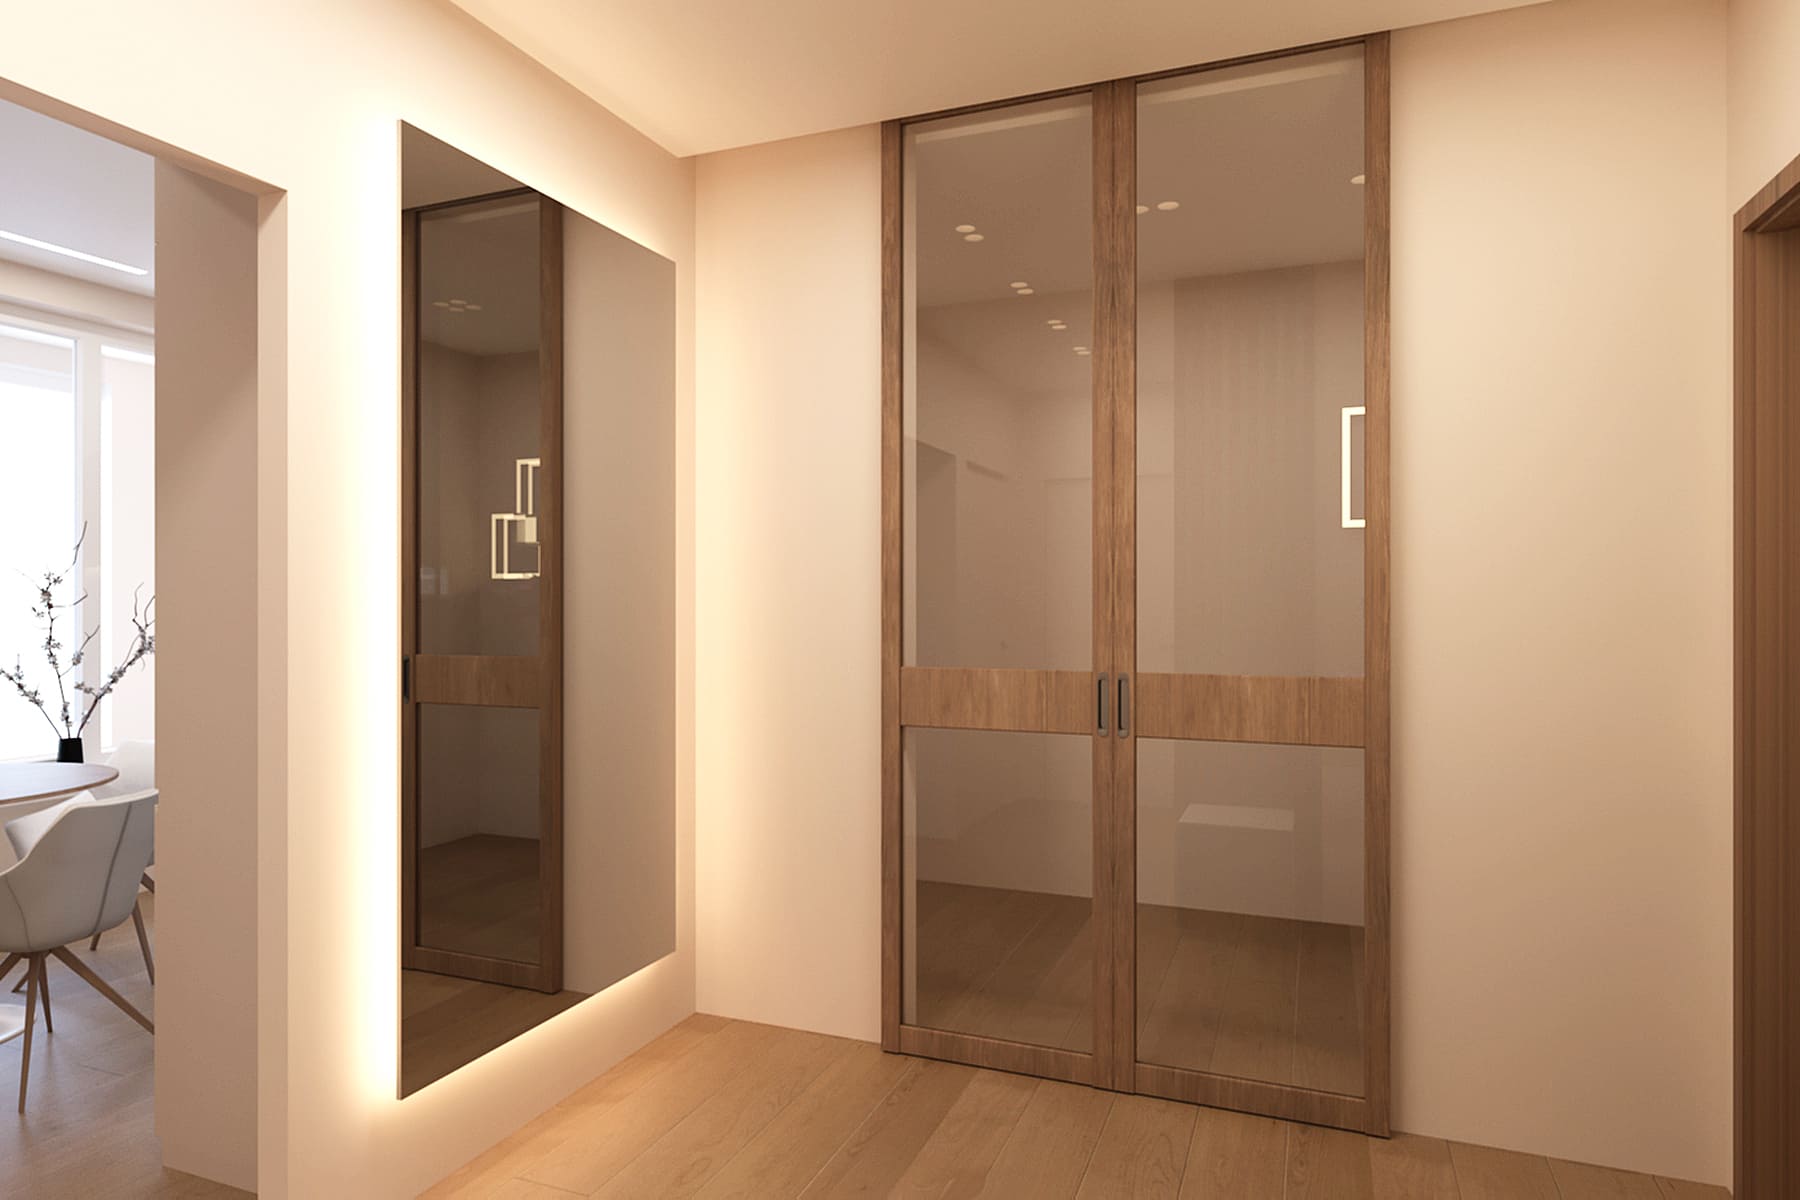 дизайн светлой прихожей с настенным большим прямоугольным зеркалом с подсветкой и раздвижными дверьми в гардеробную